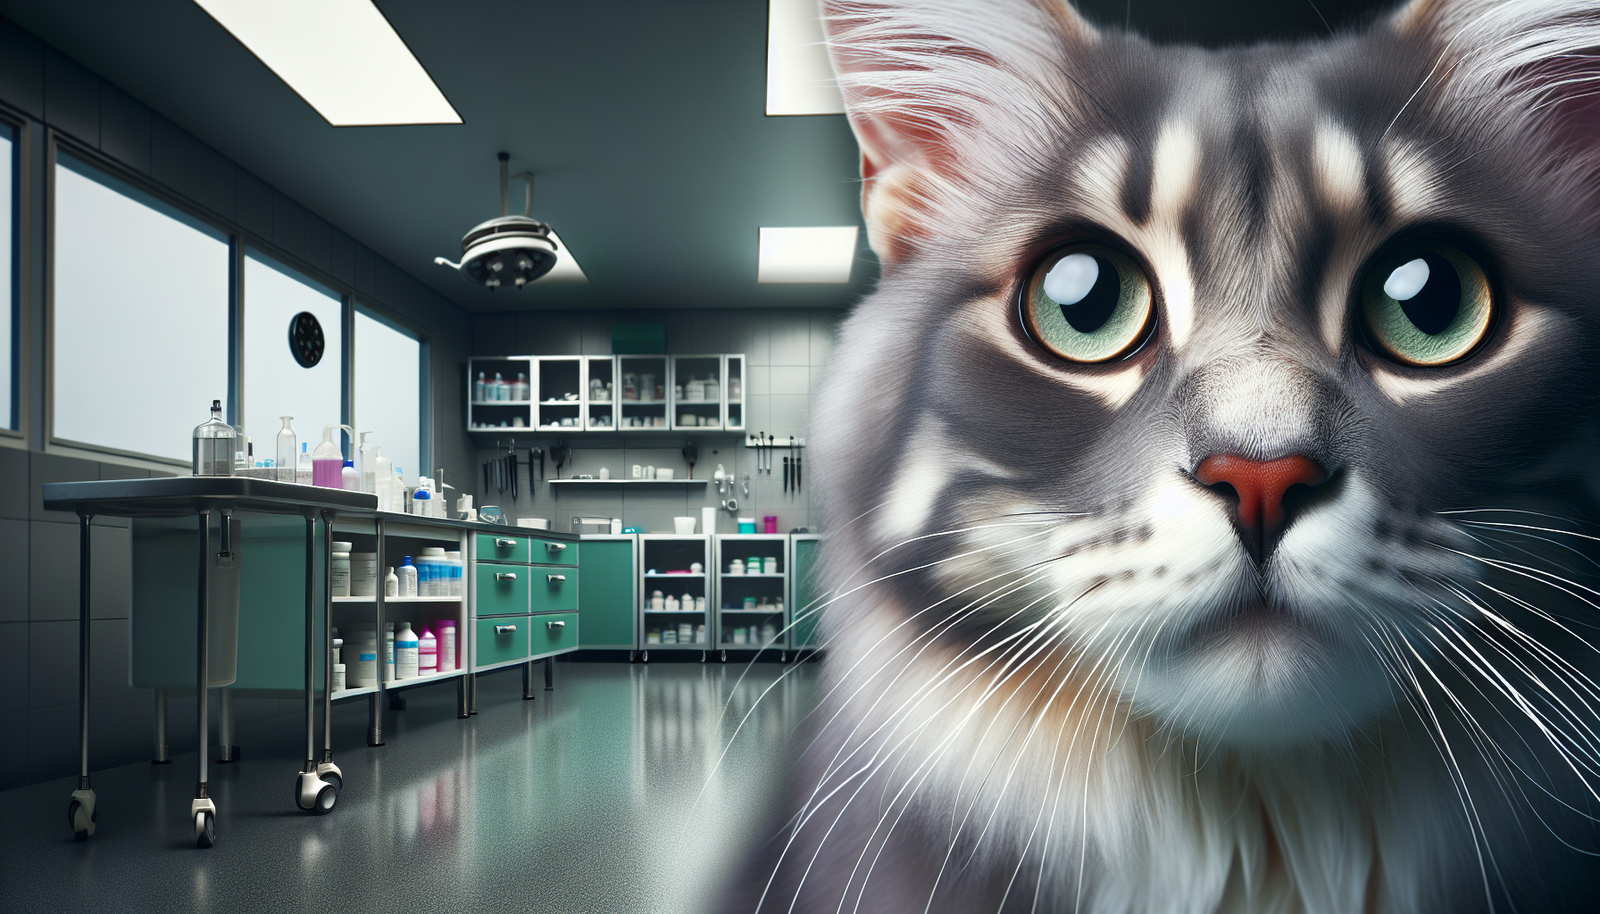 Passion Chat : FIV chez les chats (Virus de l'immunodéficience féline) : Causes, signes et soins expliqués par un vétérinaire - Passion Chat